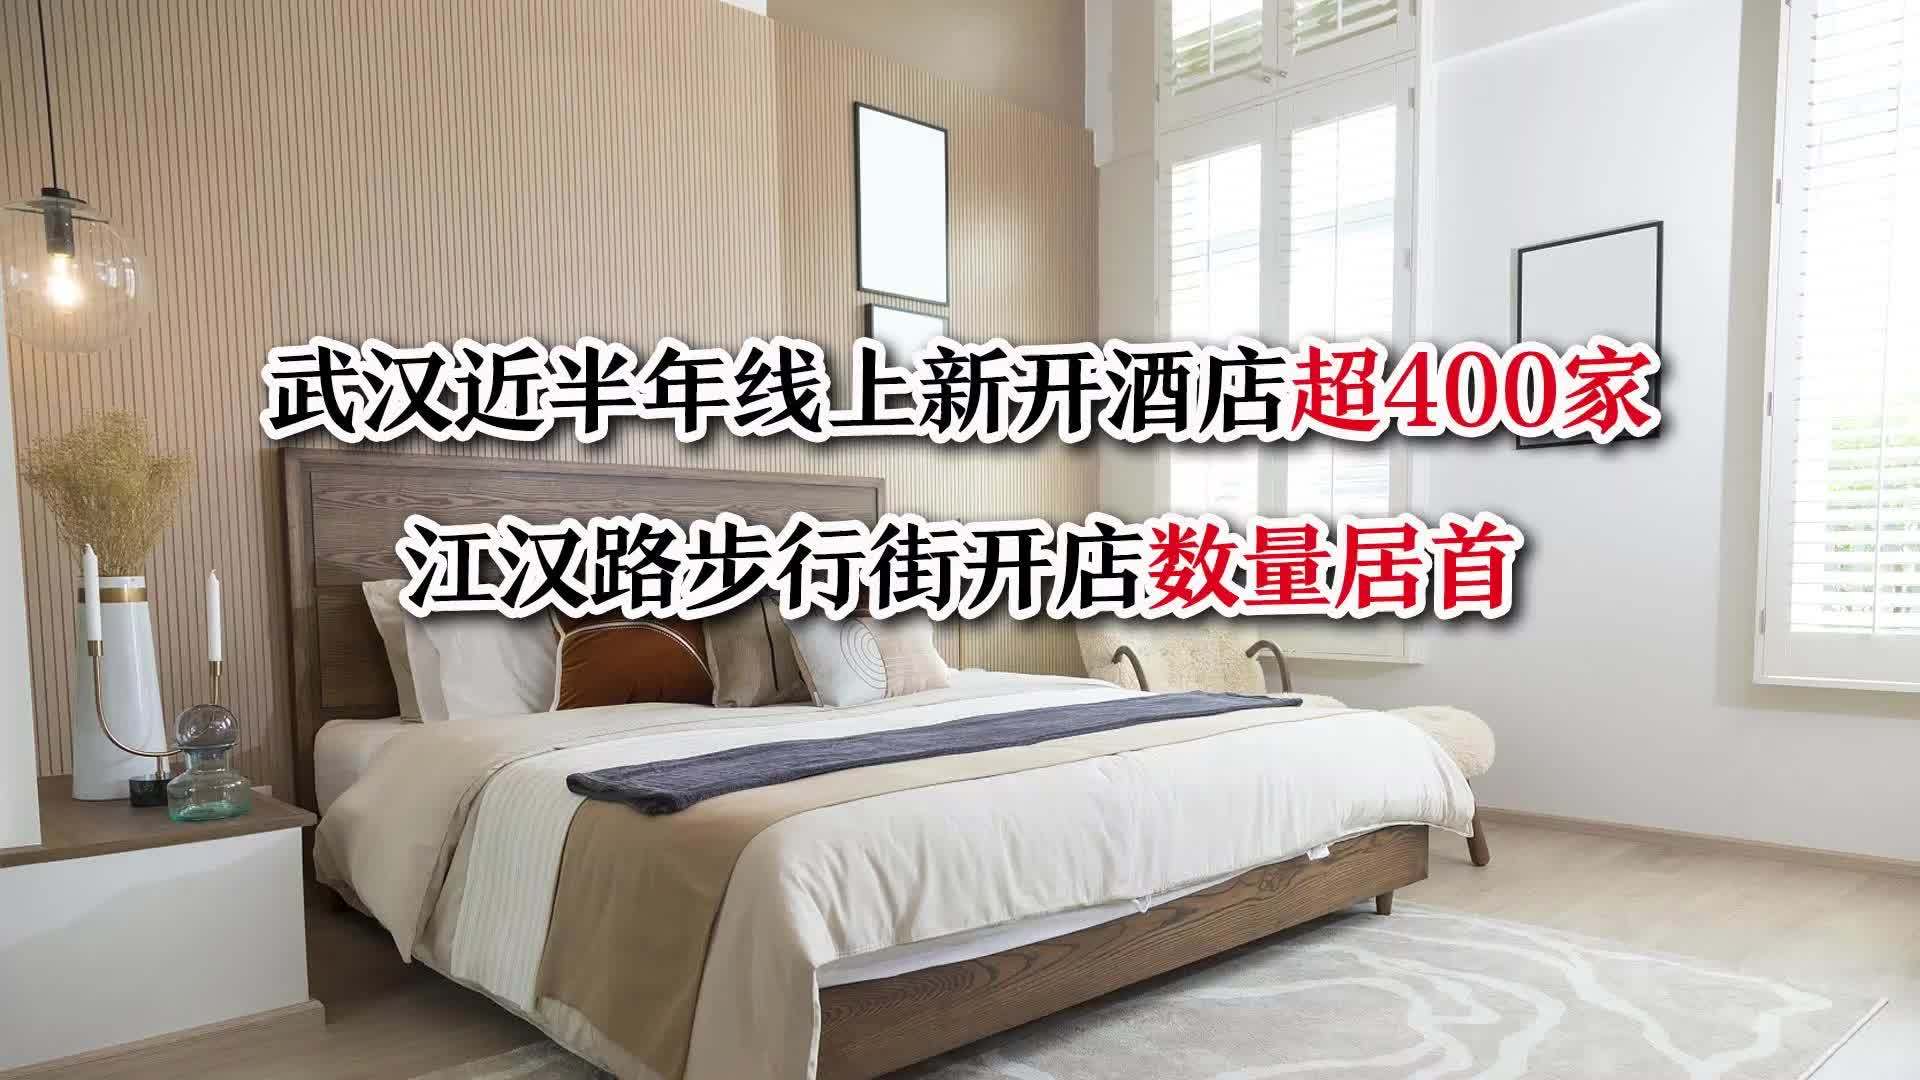 武汉近半年线上新开酒店超400家  江汉路步行街开店数量居首